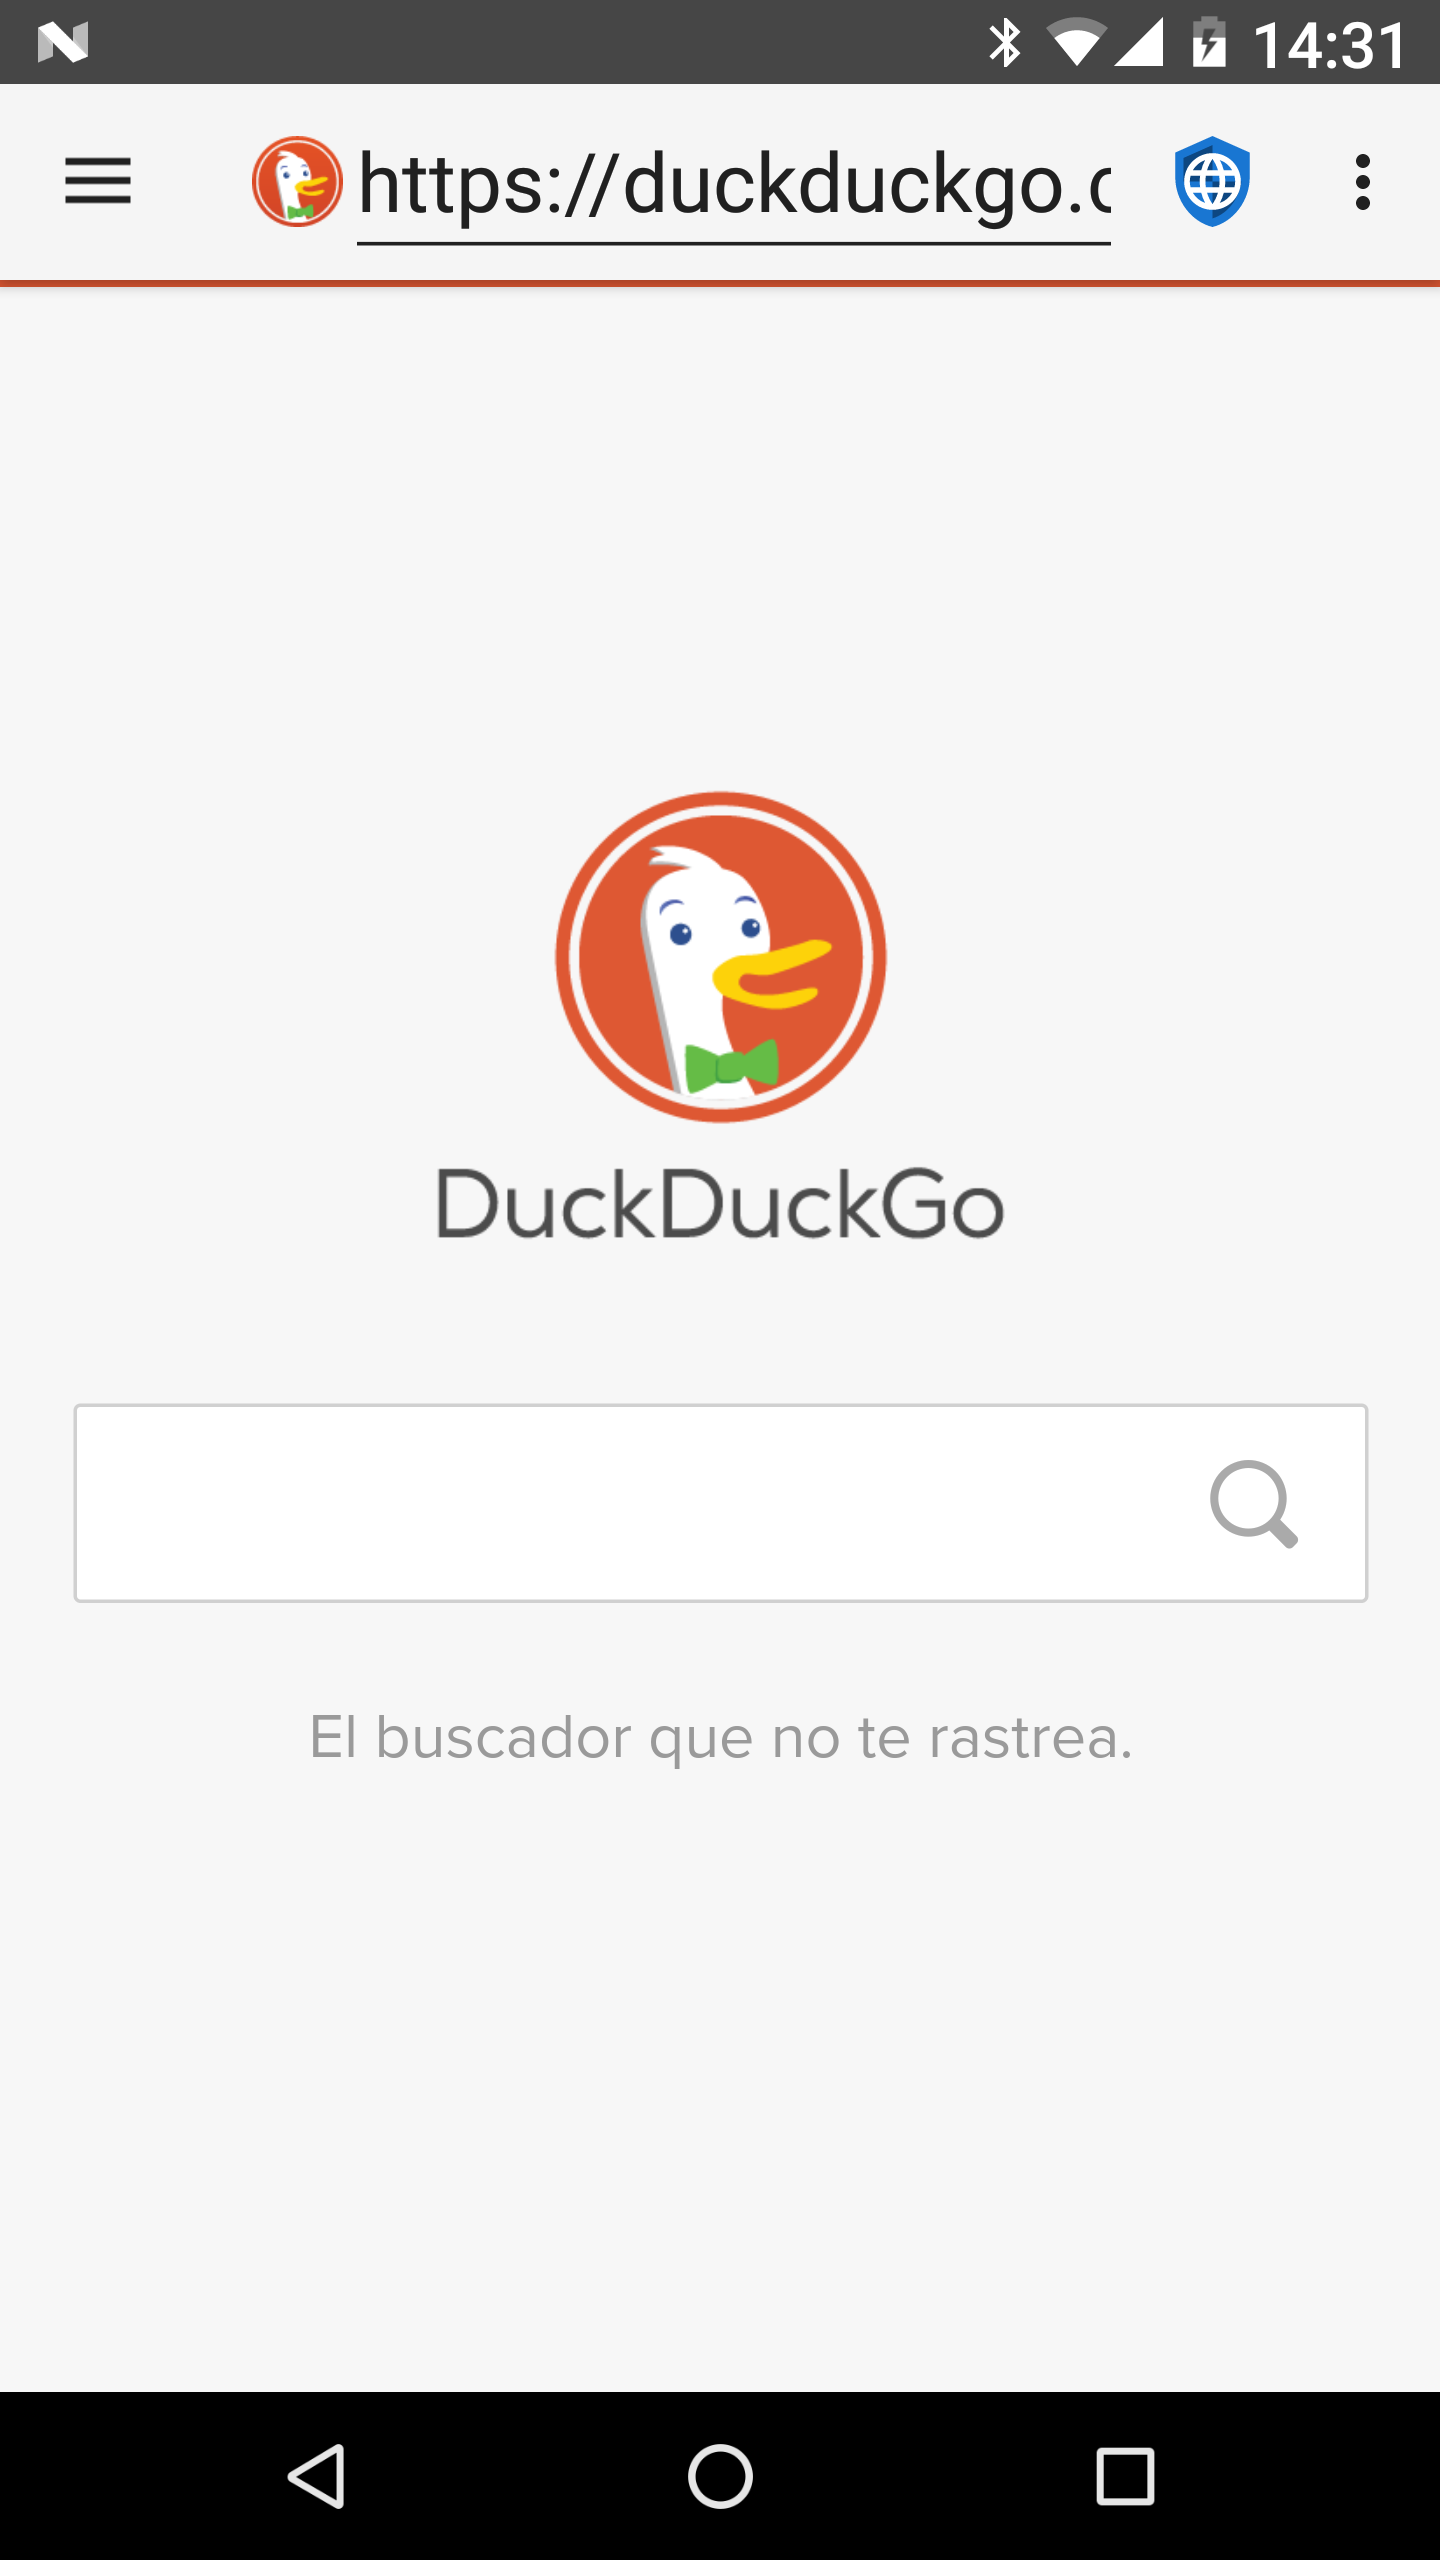 fastlane/metadata/android/es/phoneScreenshots/01 - Duck Duck Go - es.png